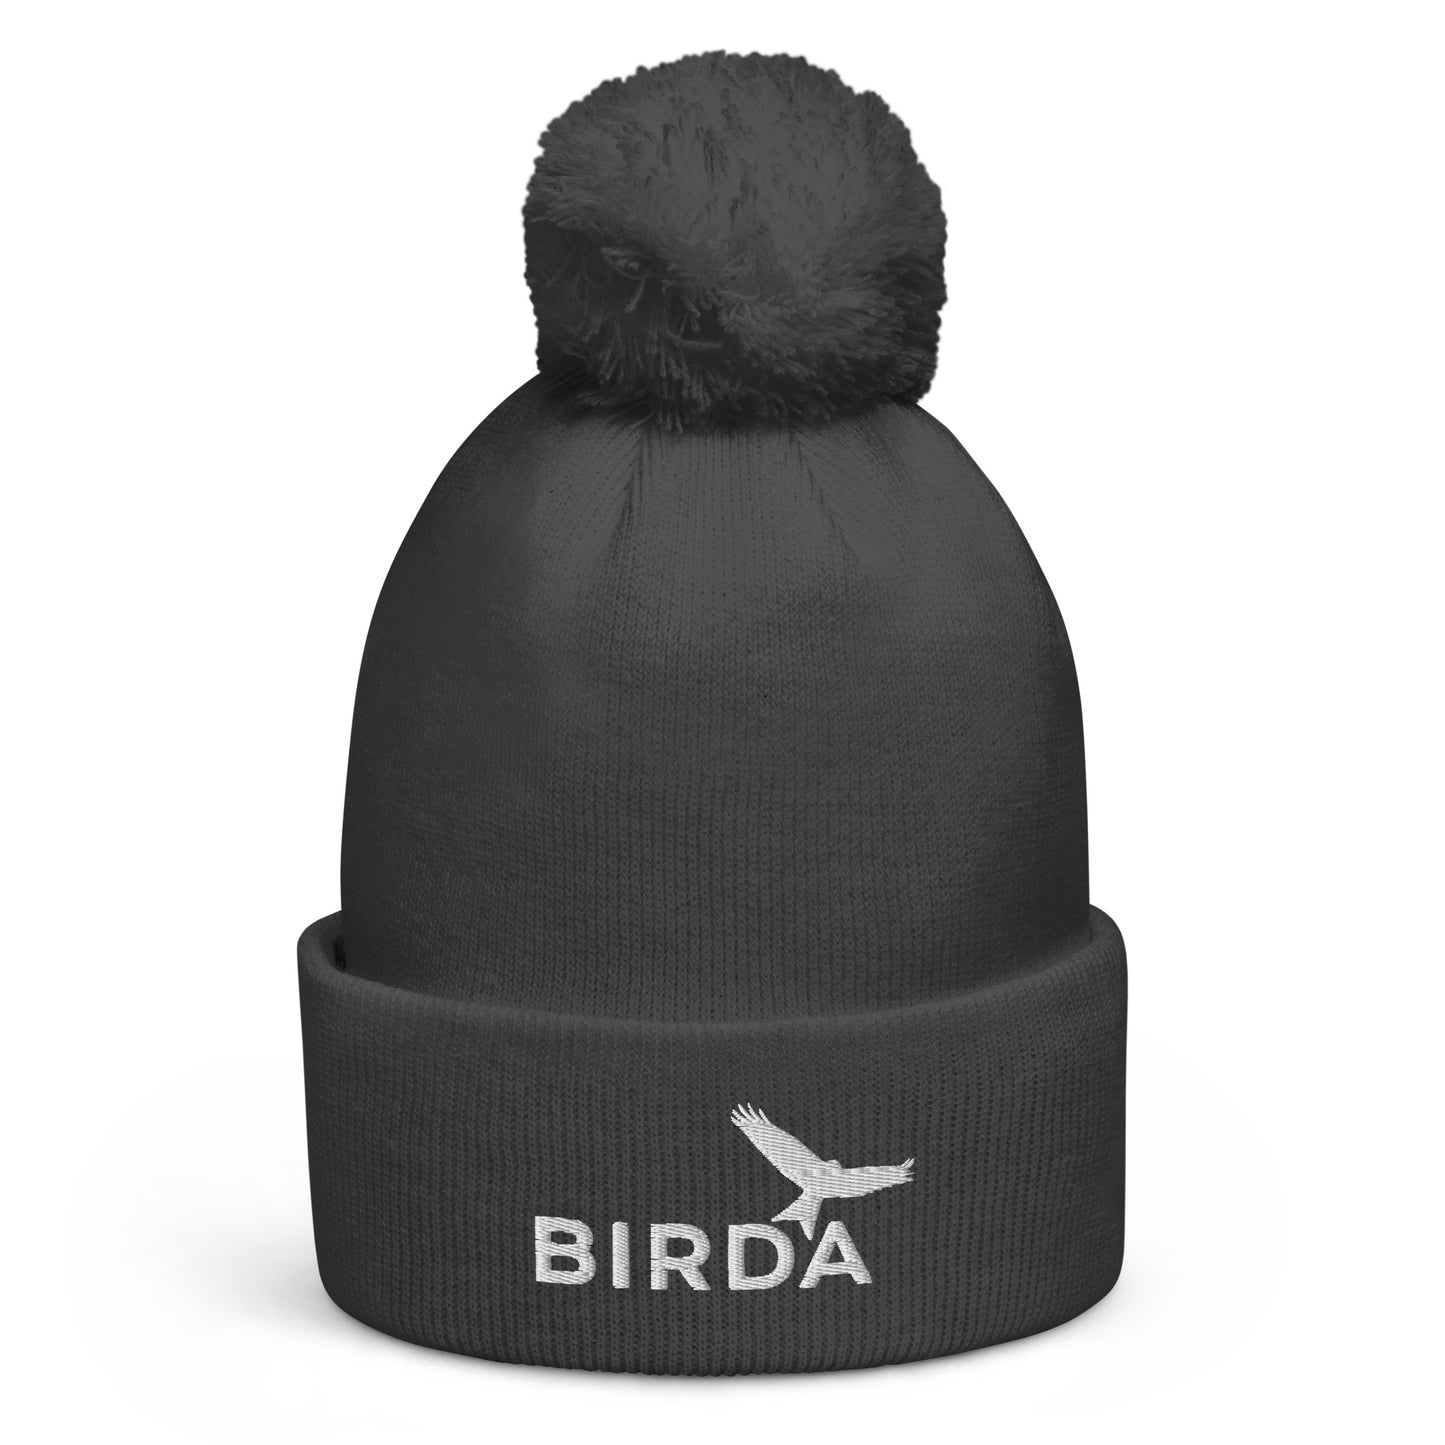 Birda Bird Cuffed Pom-Pom beanie in grey